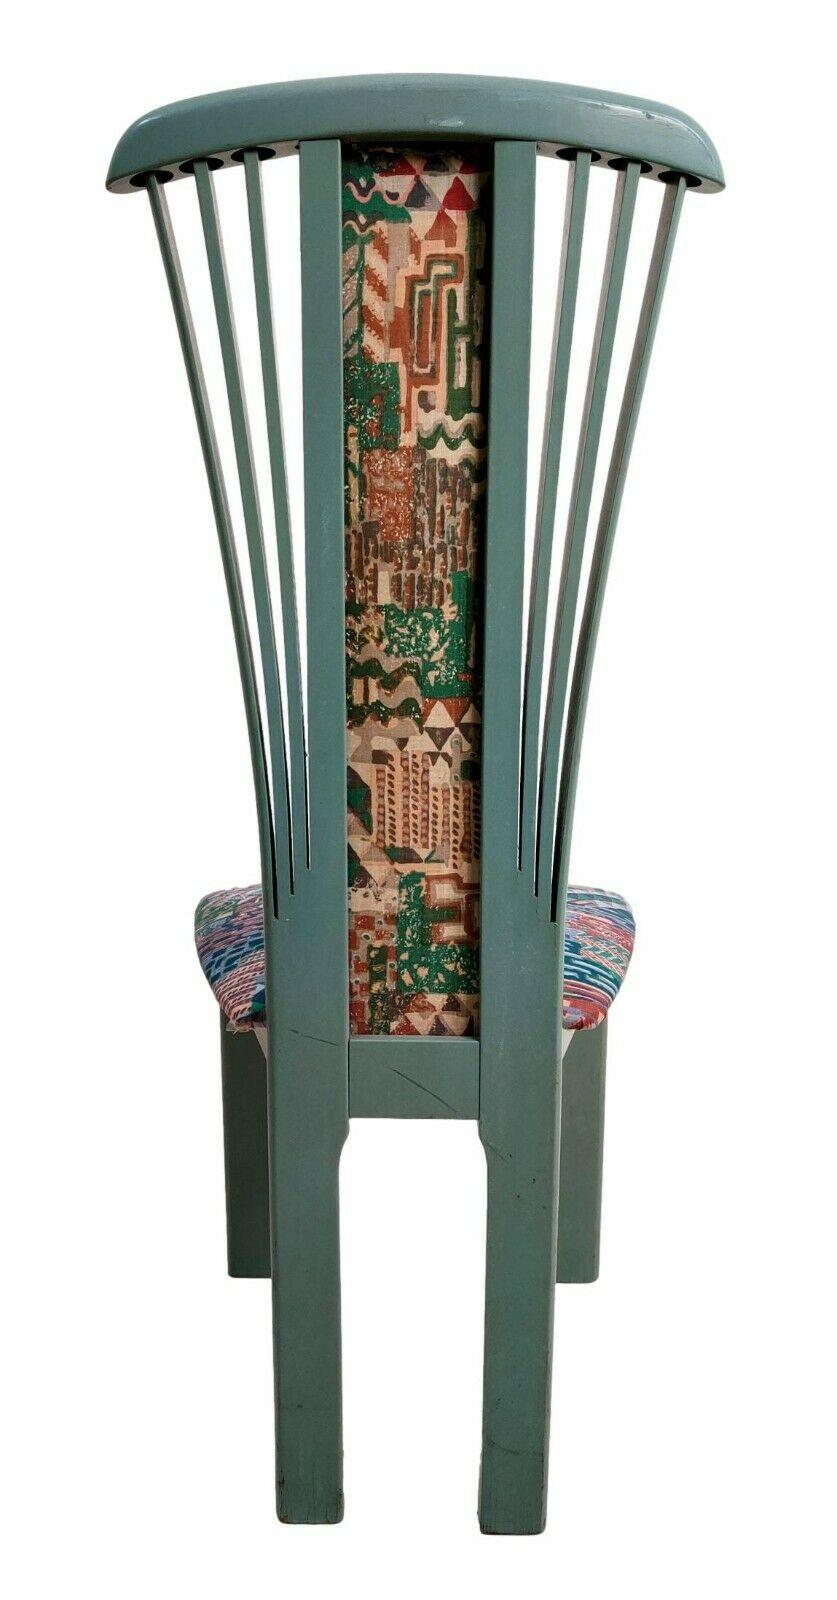 Satz von vier originalen Stühlen aus den 70er Jahren, hergestellt im Stil von Pierre Cardin, ganz aus Holz mit Polsterung auf dem Sitz und Rücken

Avionblaue Farbe, polychromer Stoff.

Sie messen 110 cm in der Höhe, 47 cm in der Breite und 50 cm